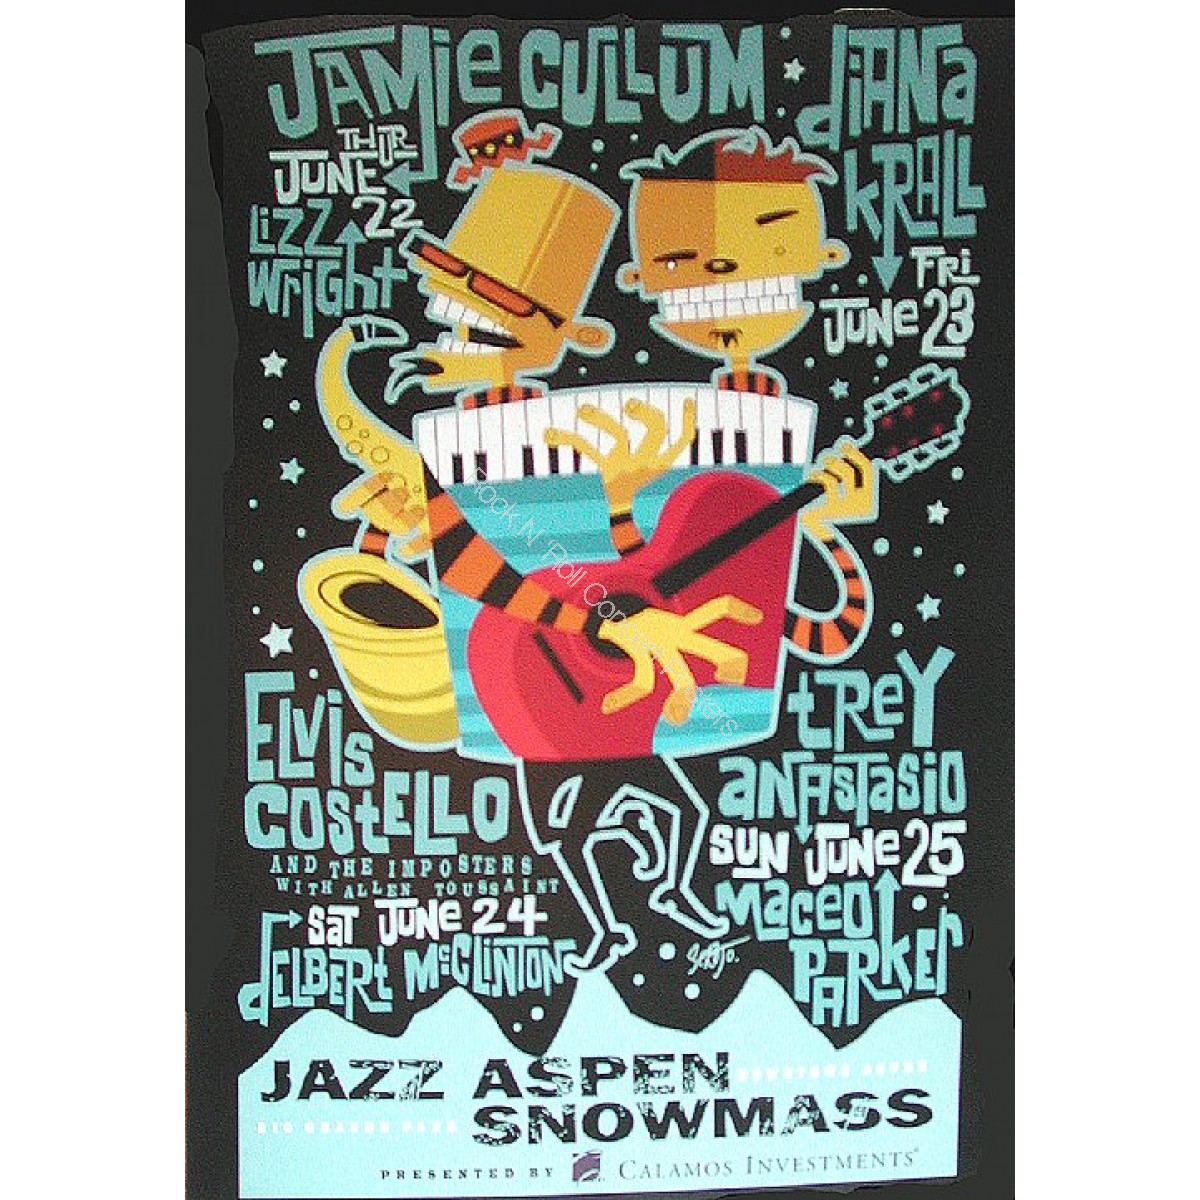 Jazz Aspen Snowmass Festival '06 Poster